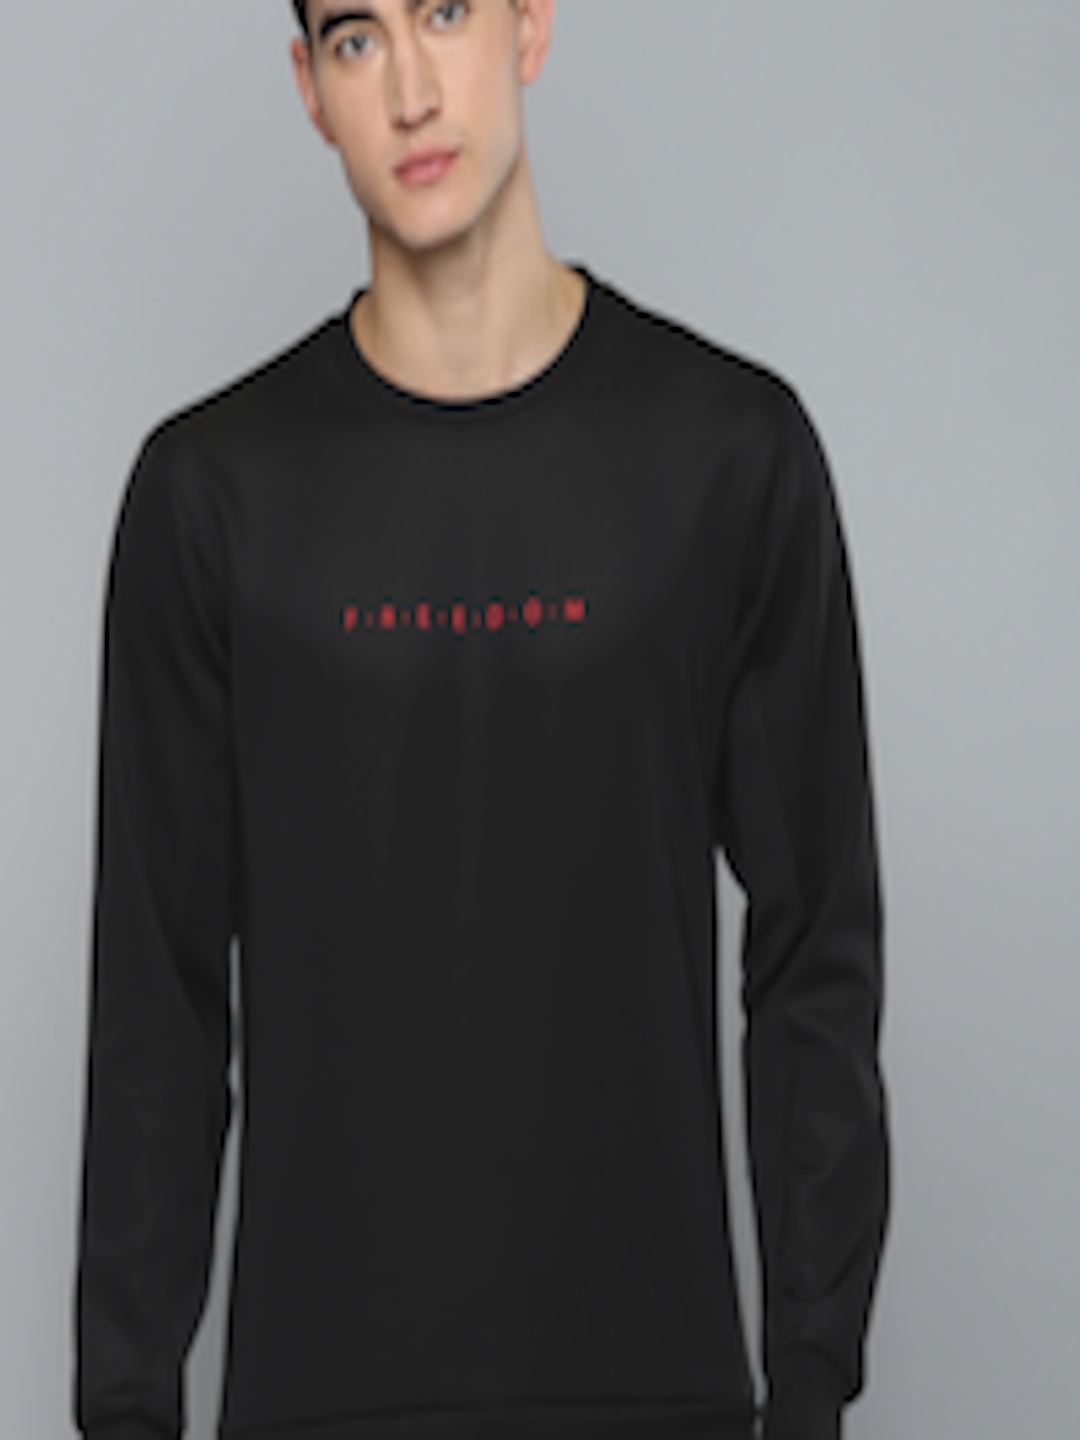 Buy Harvard Men Black Solid Sweatshirt - Sweatshirts for Men 9920121 ...